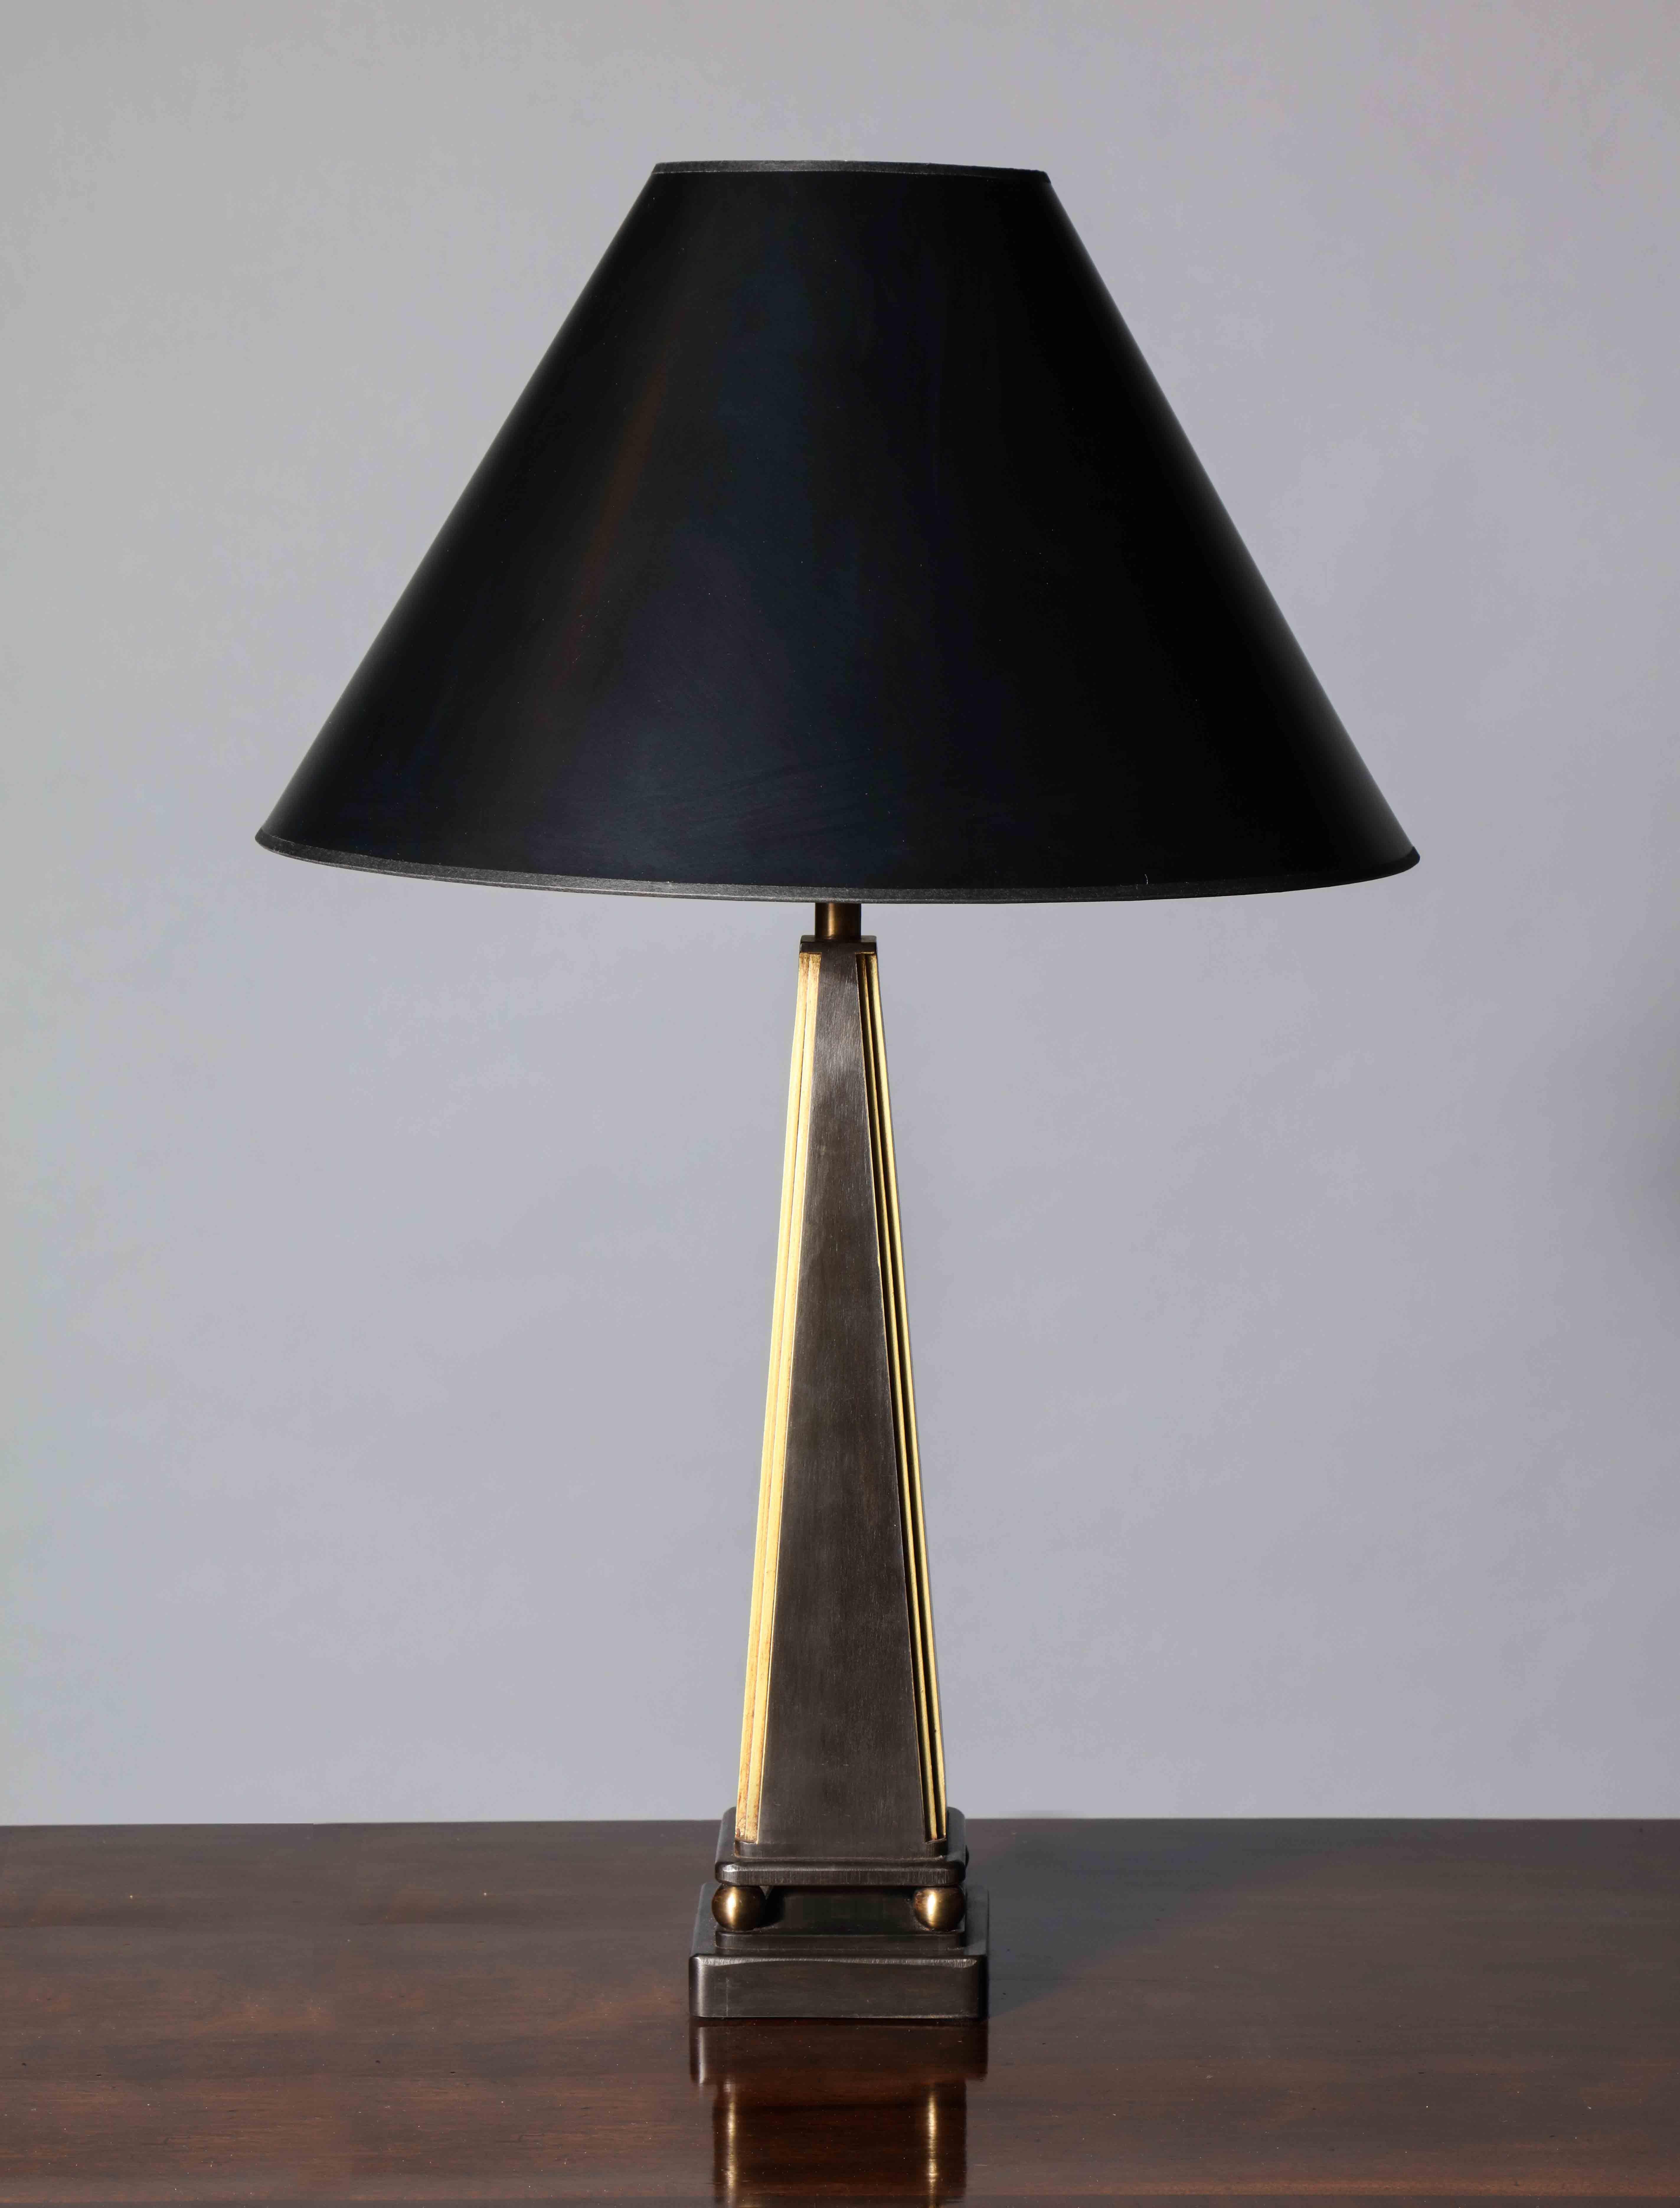 Lampe de table en acier fabriquée à la main, de forme pyramidale, reposant sur des pieds à boule et sur une plinthe carrée. Le design fait référence à l'esthétique néoclassique française des années 1930 à la fin des années 1940.

Les détails en